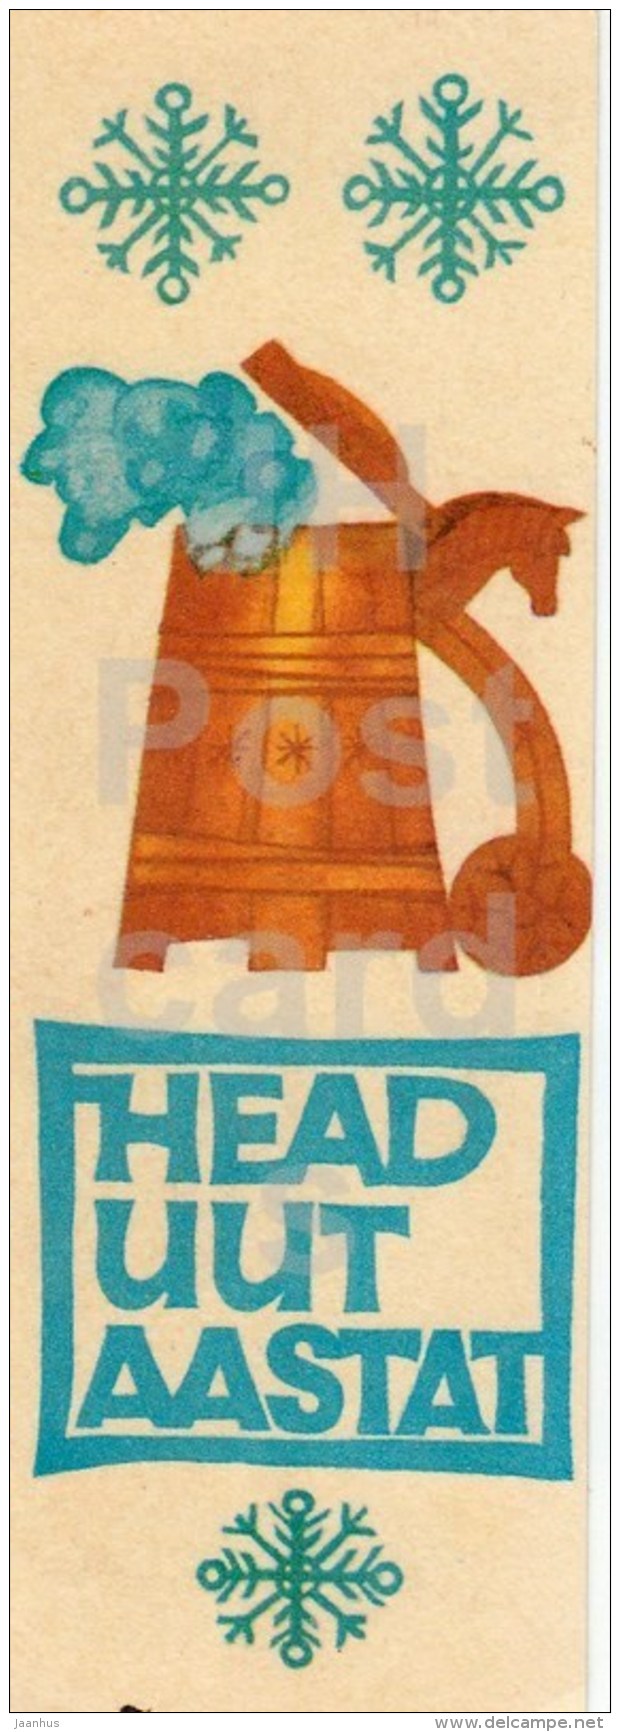 New Year Greeting Card by I. Sampu-Raudsepp - beer jug - Estonia USSR - 1969 - unused - JH Postcards